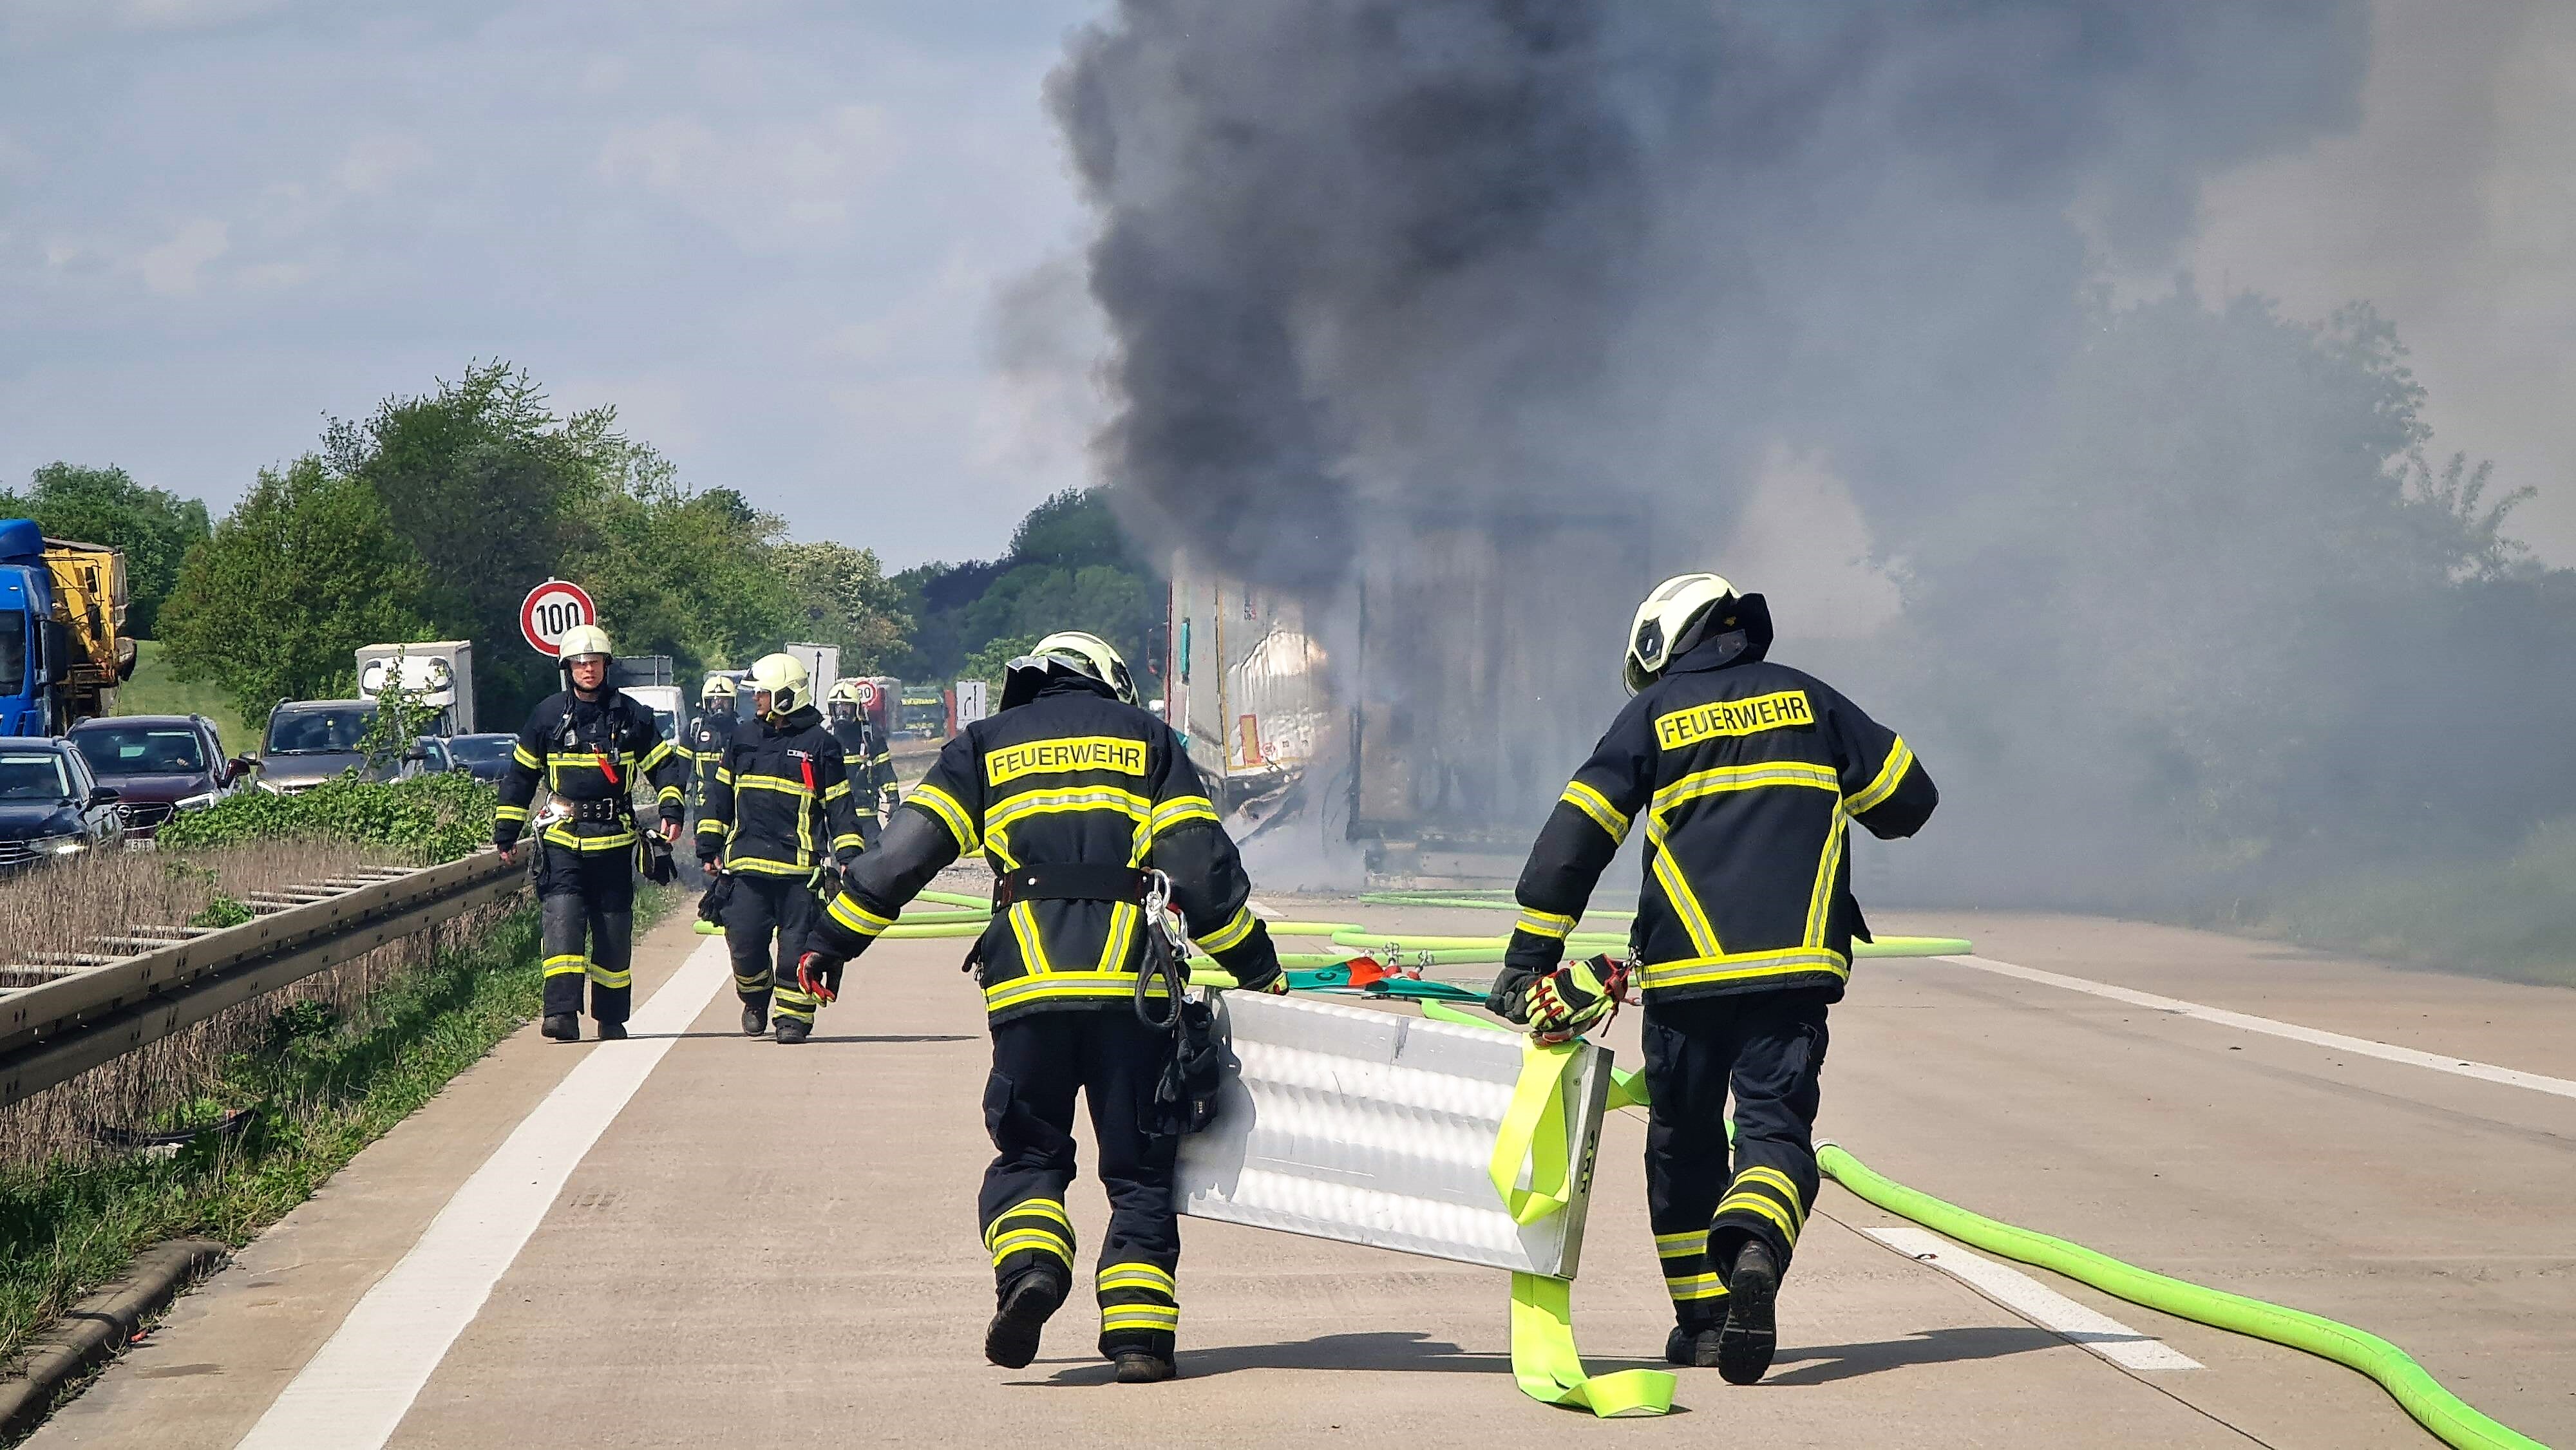 Feuer auf der Autobahn, schwere Verkehrsbehinderung! Mit Papier beladener Lastwagen brennt wie Zunder